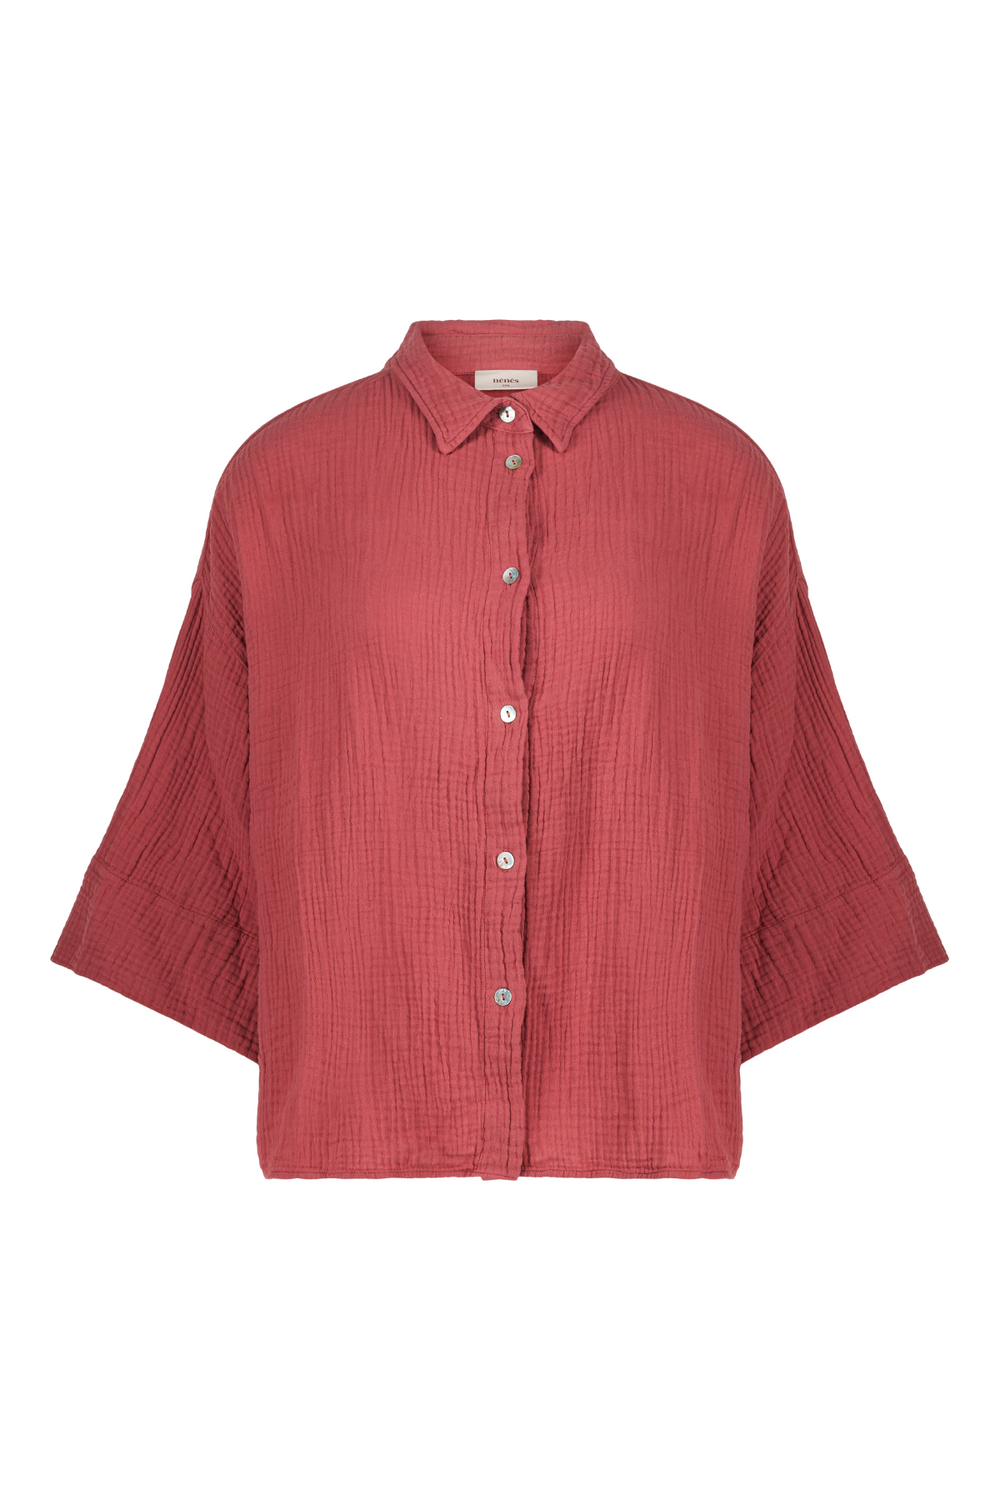 Marra Shirt - Dust Pink